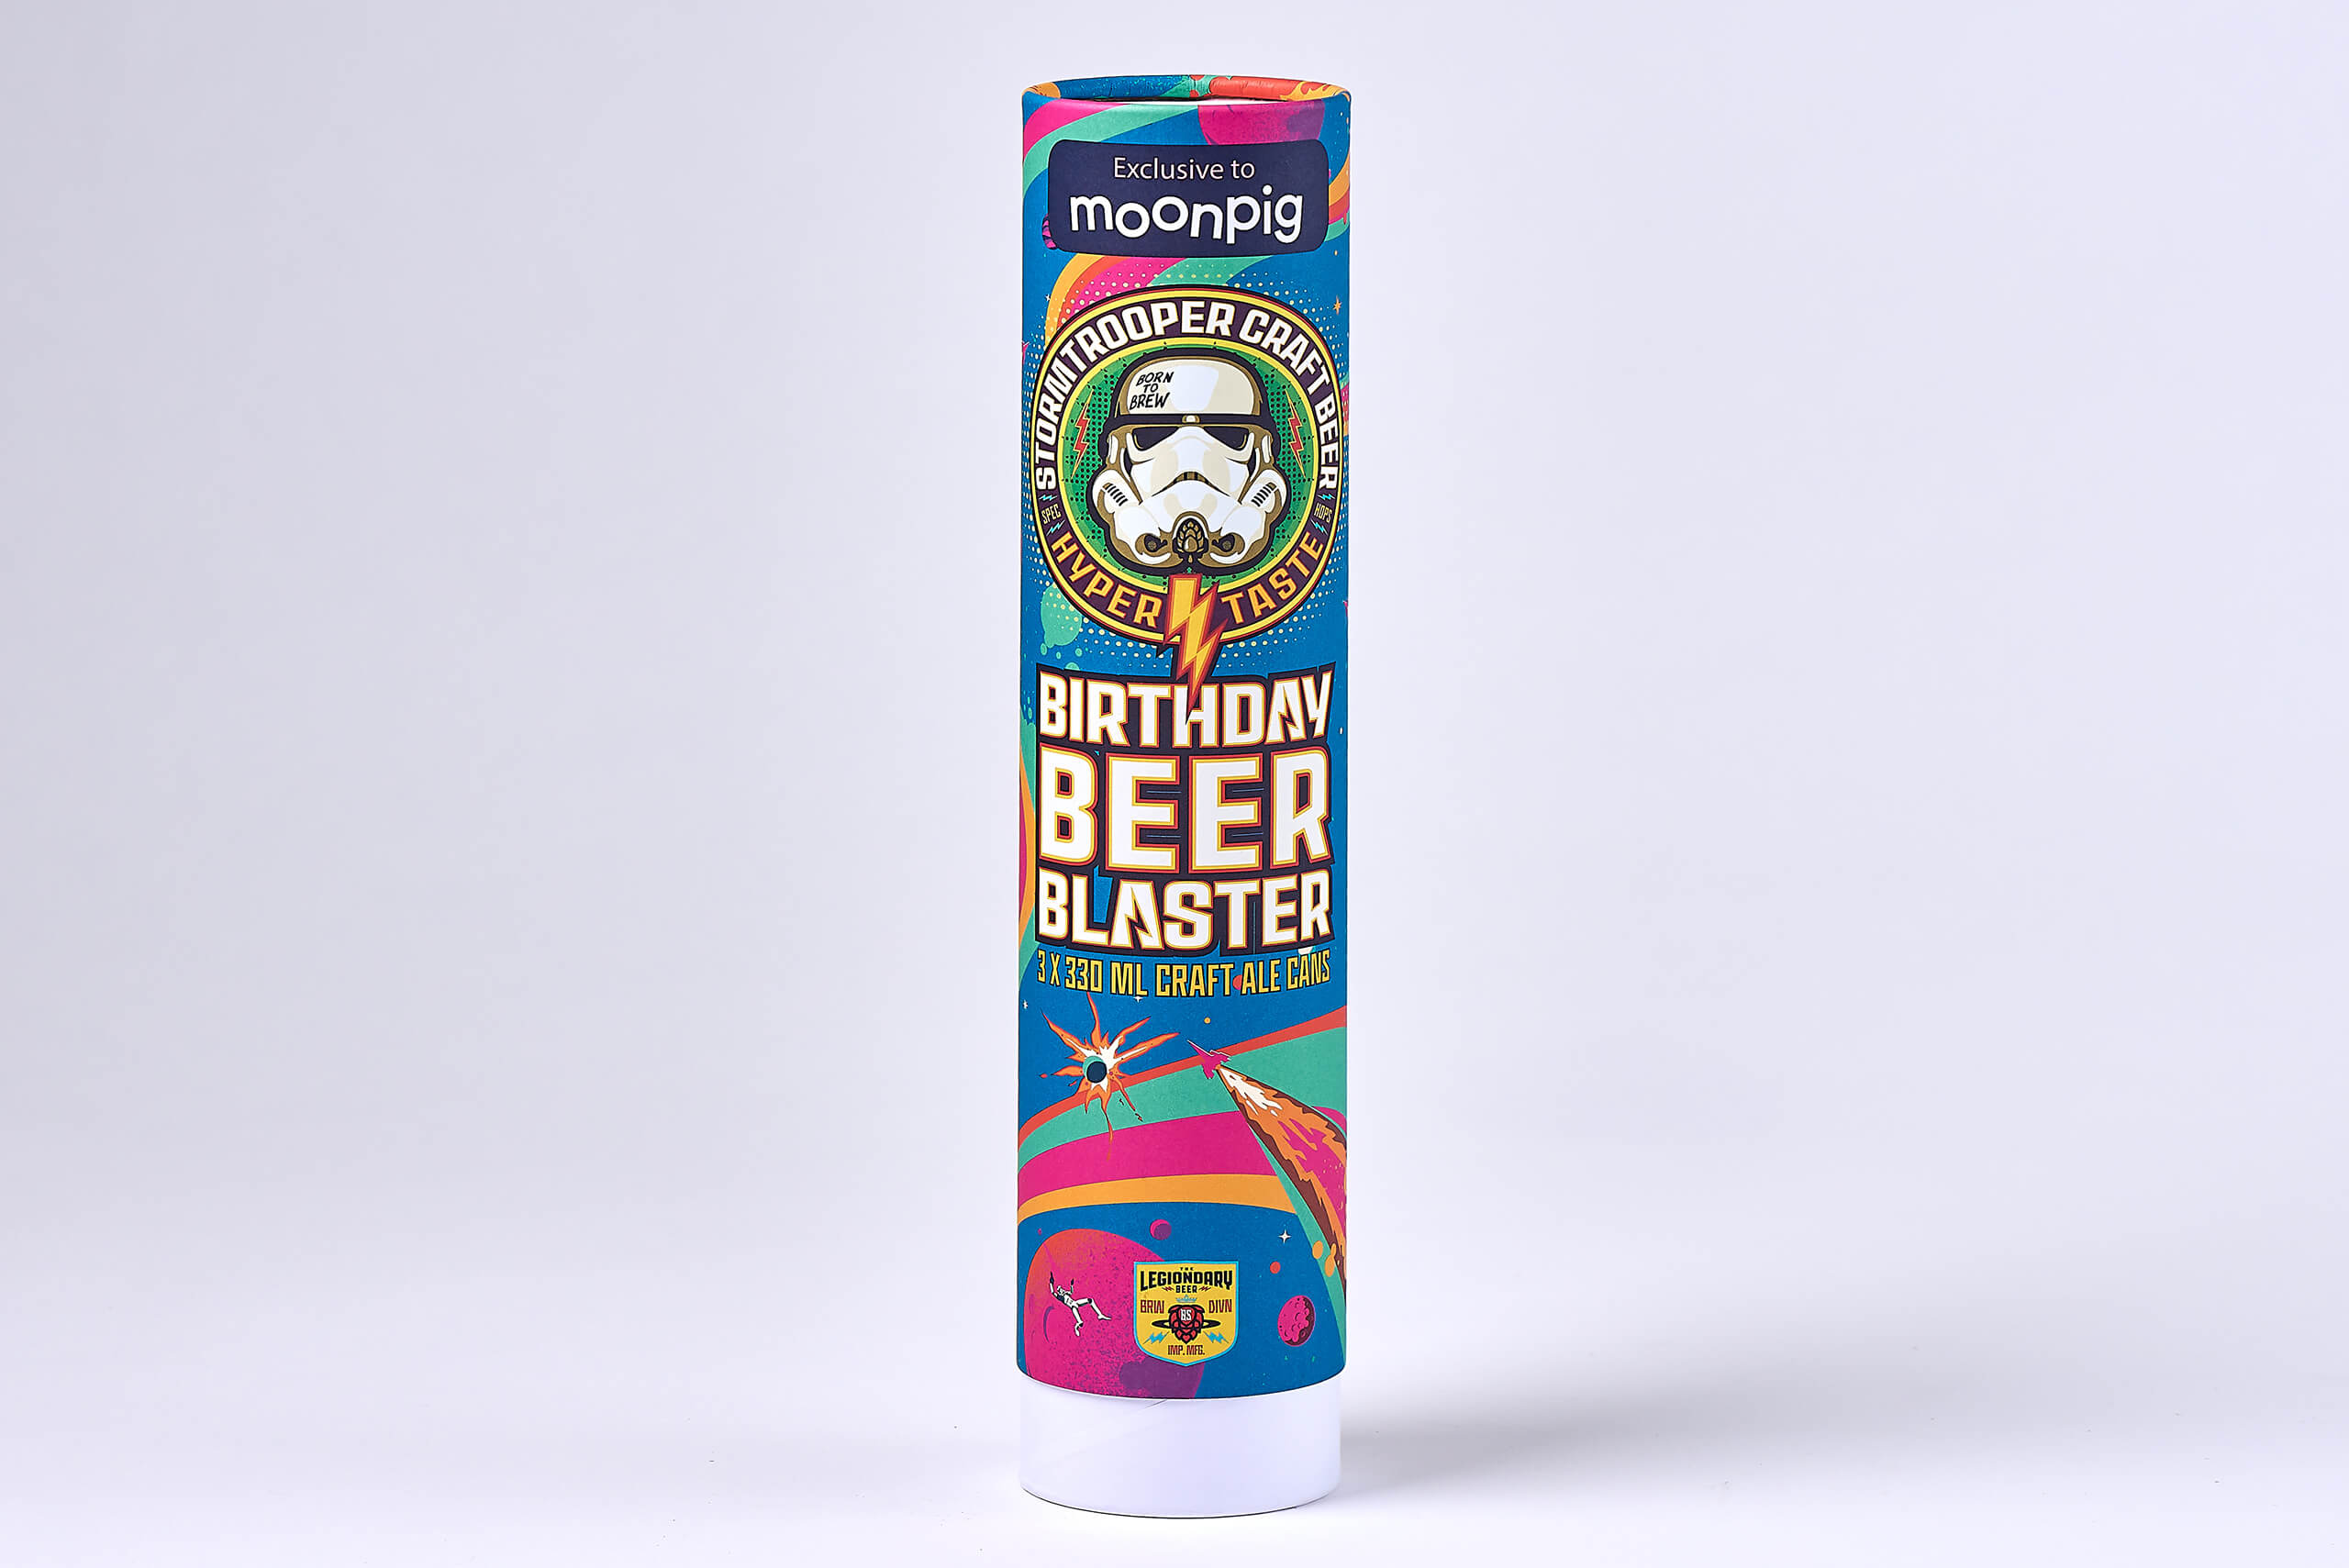 Beer blaster card tube packaging